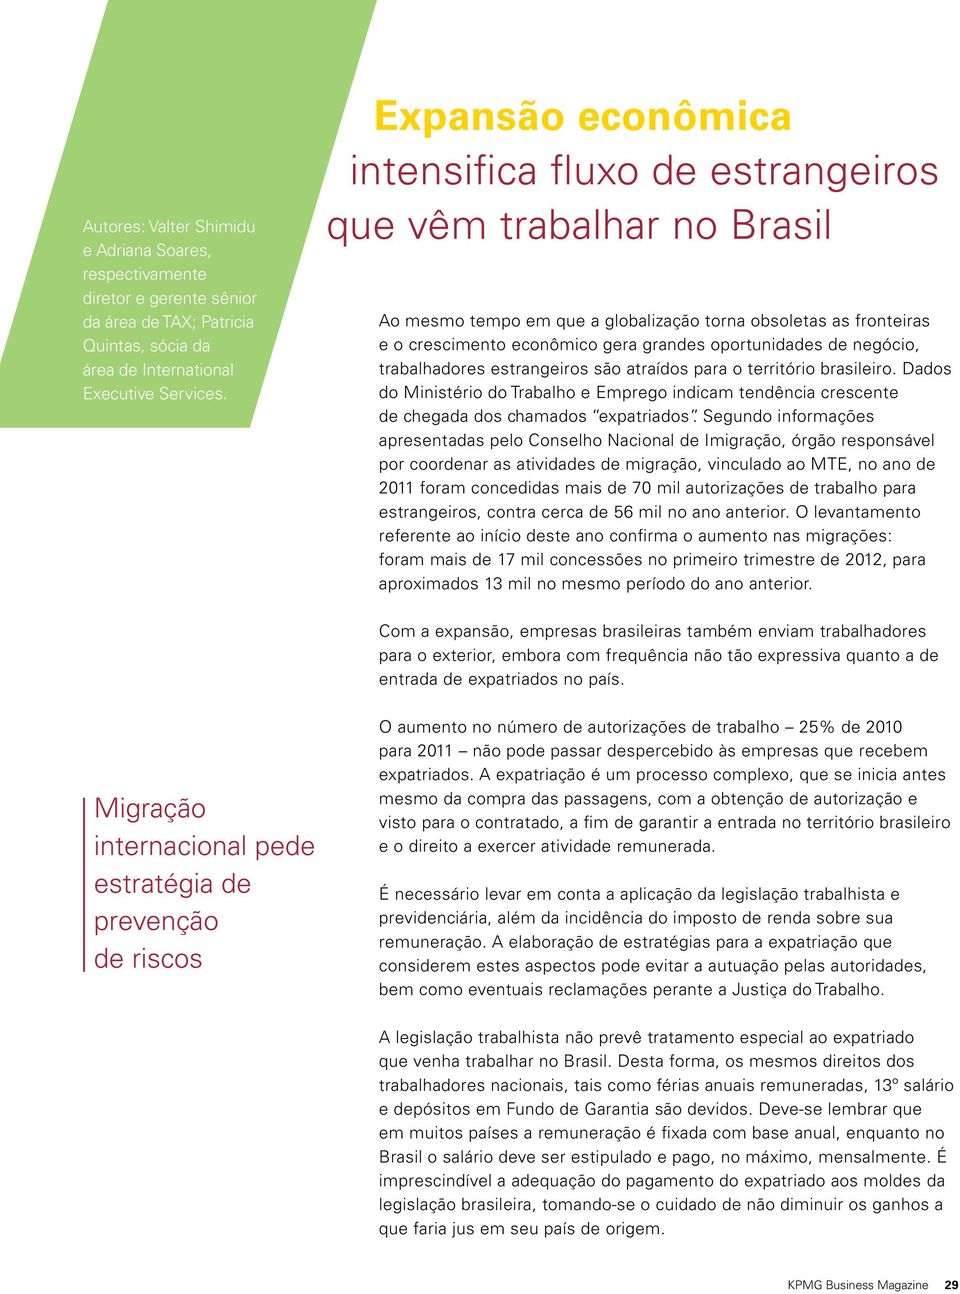 oportunidades de negócio, trabalhadores estrangeiros são atraídos para o território brasileiro.